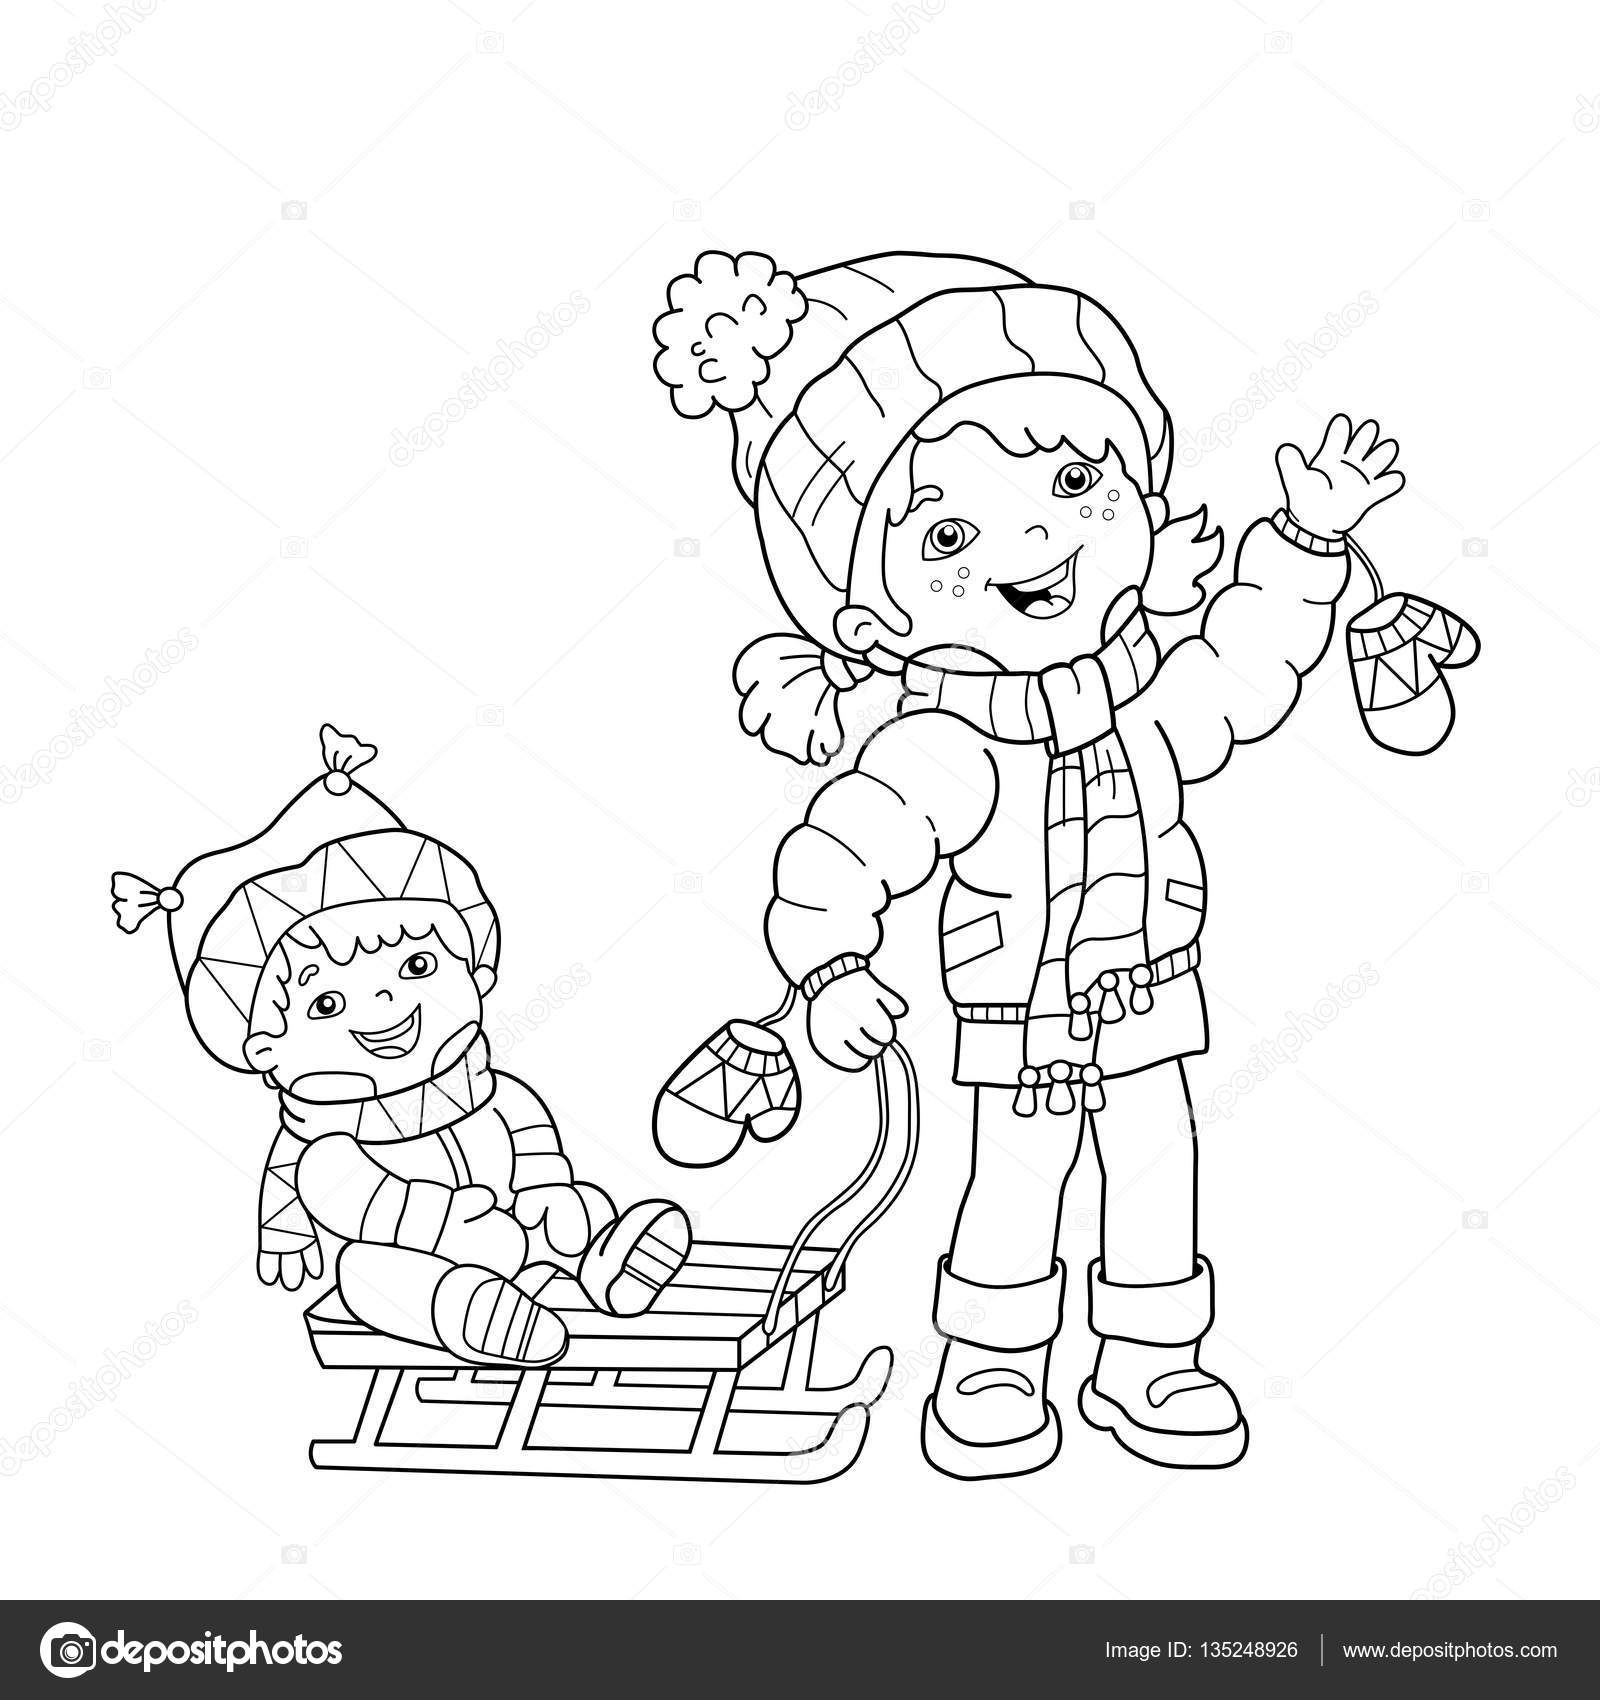 Disegni da colorare pagina muta della ragazza del fumetto con il fratello lo slittino Inverno Libro da colorare per bambini — Vettoriali di Oleon17